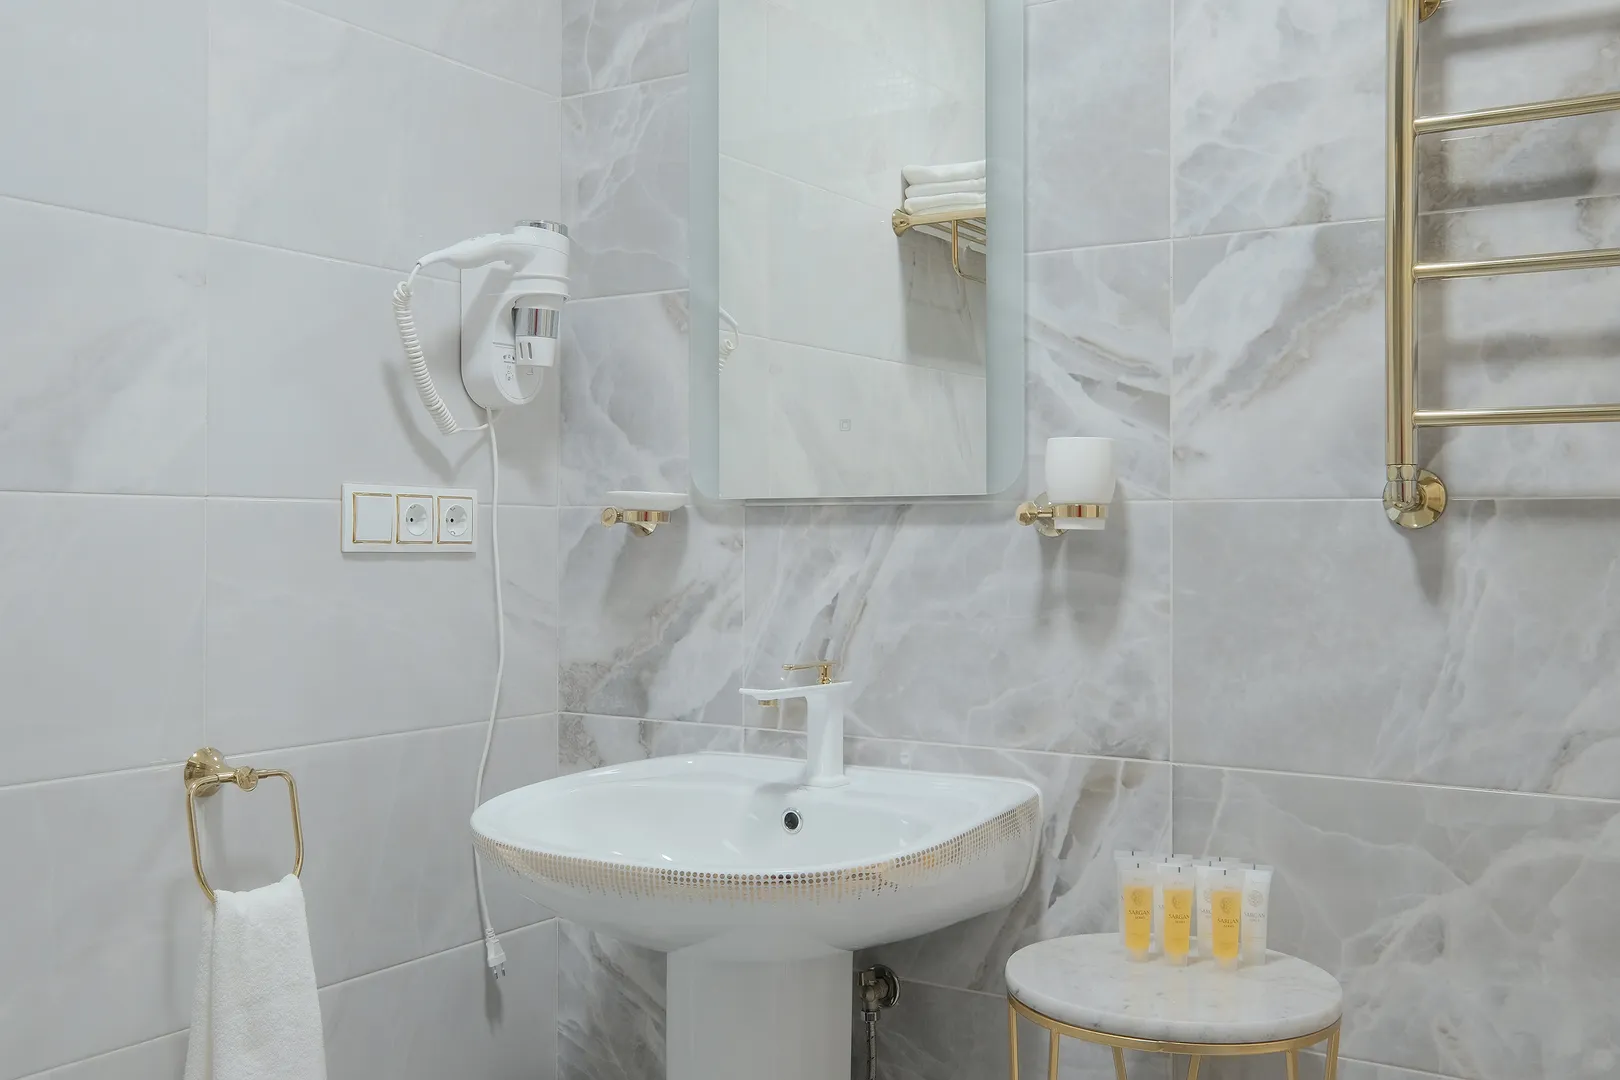 Ванная комната, фен, косметические принадлежности, полотенца